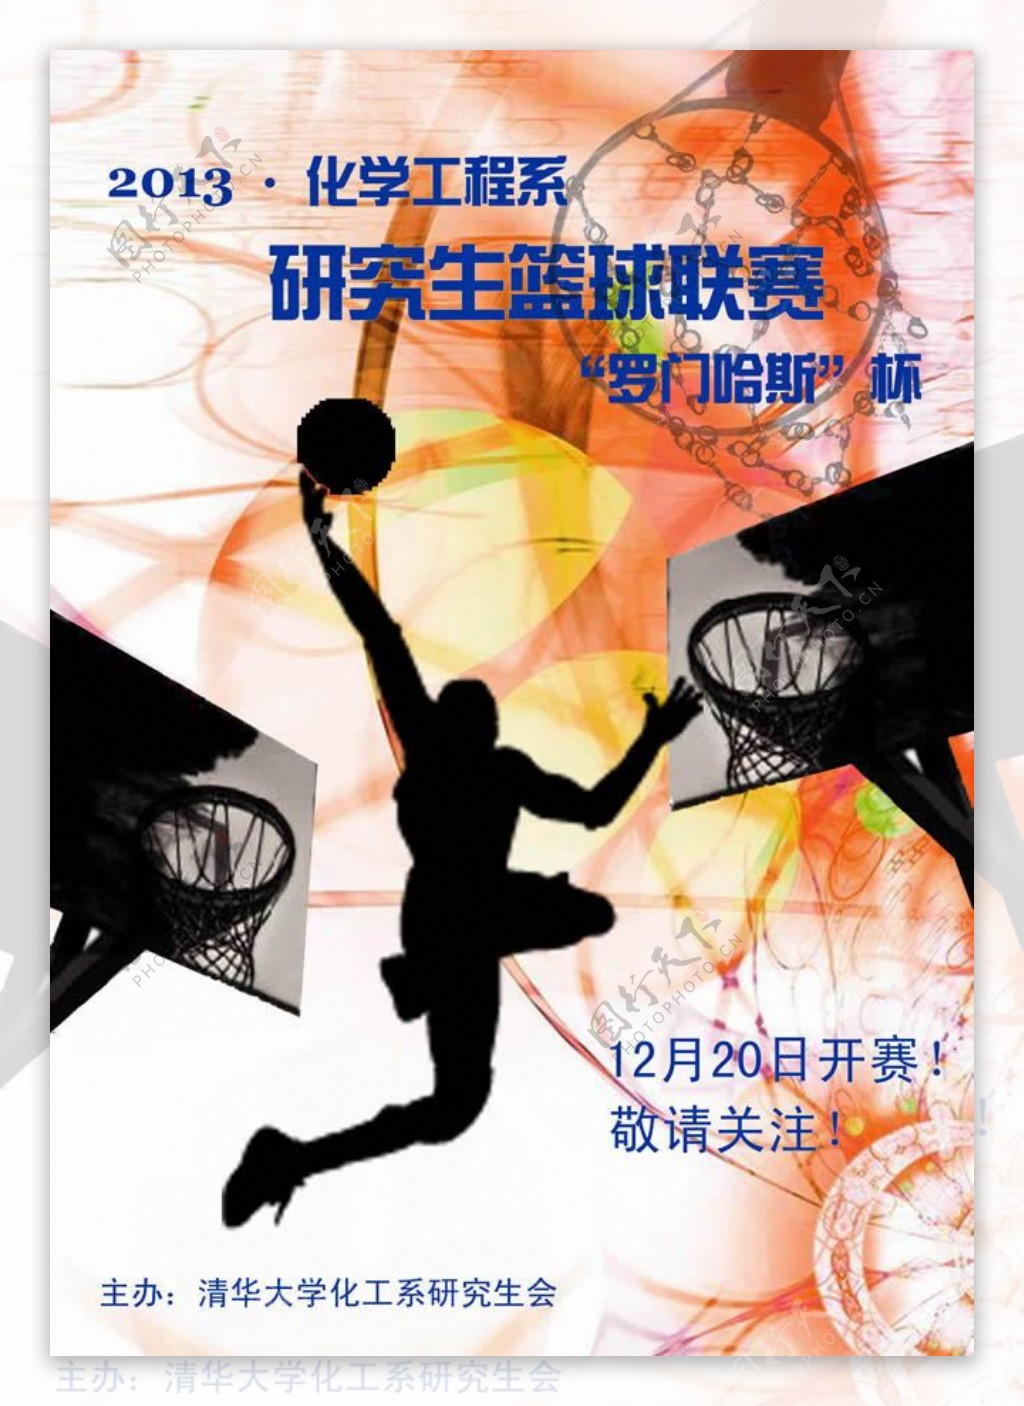 研究生篮球联赛活动海报psd素材